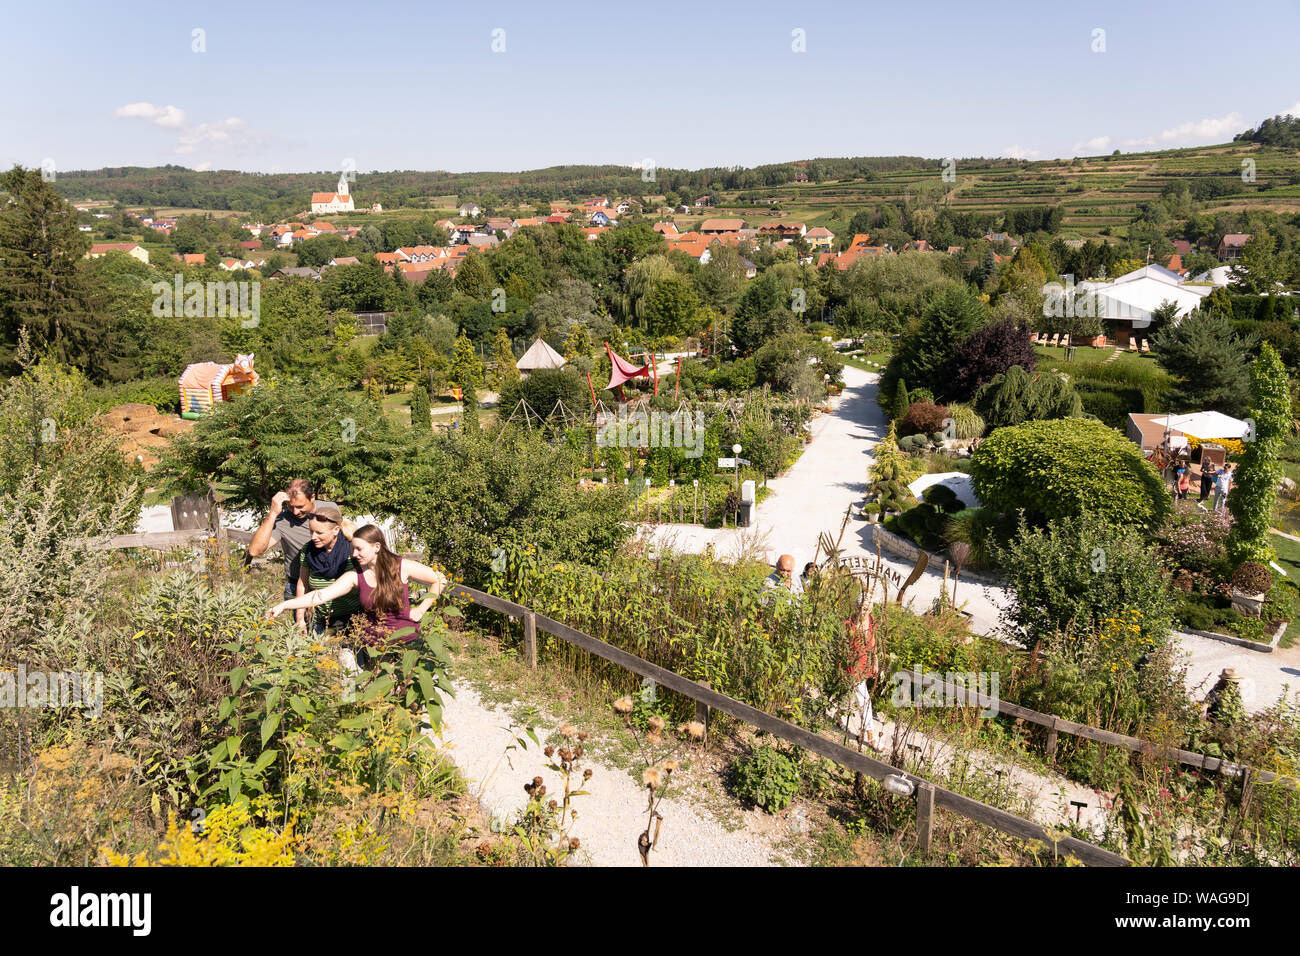 La vista su tutta Kittenberger Erlebnisgärten e visitatori sul Kräuterschnecke - un giardino di erbe conformata come una spirale di lumaca hill - in Austria Inferiore Foto Stock